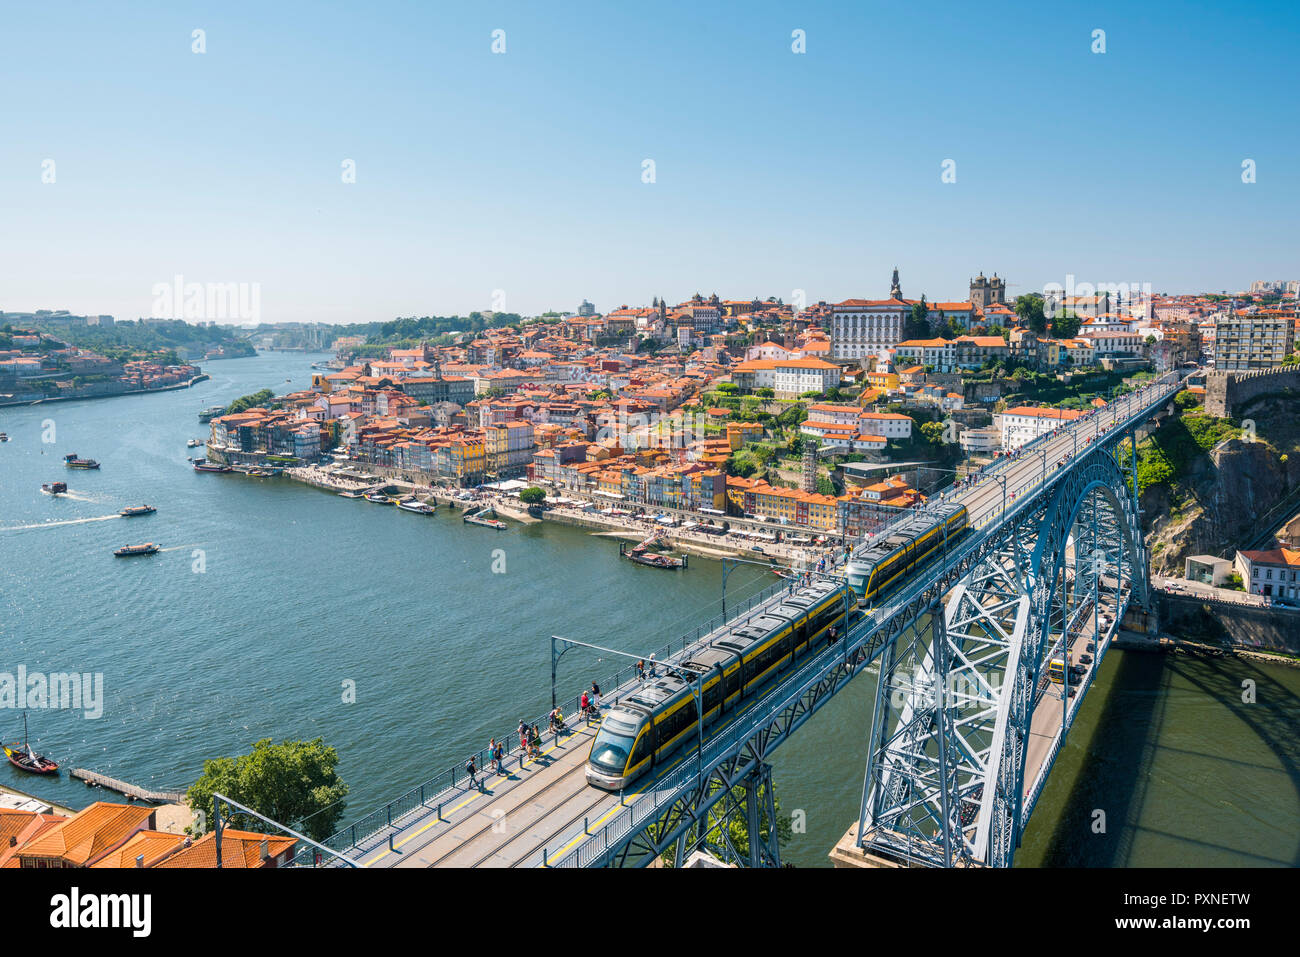 Portugal, Norte region, Porto (Oporto). Ribeira district (old town) and the Dom Luis I bridge over the Douro river. Stock Photo